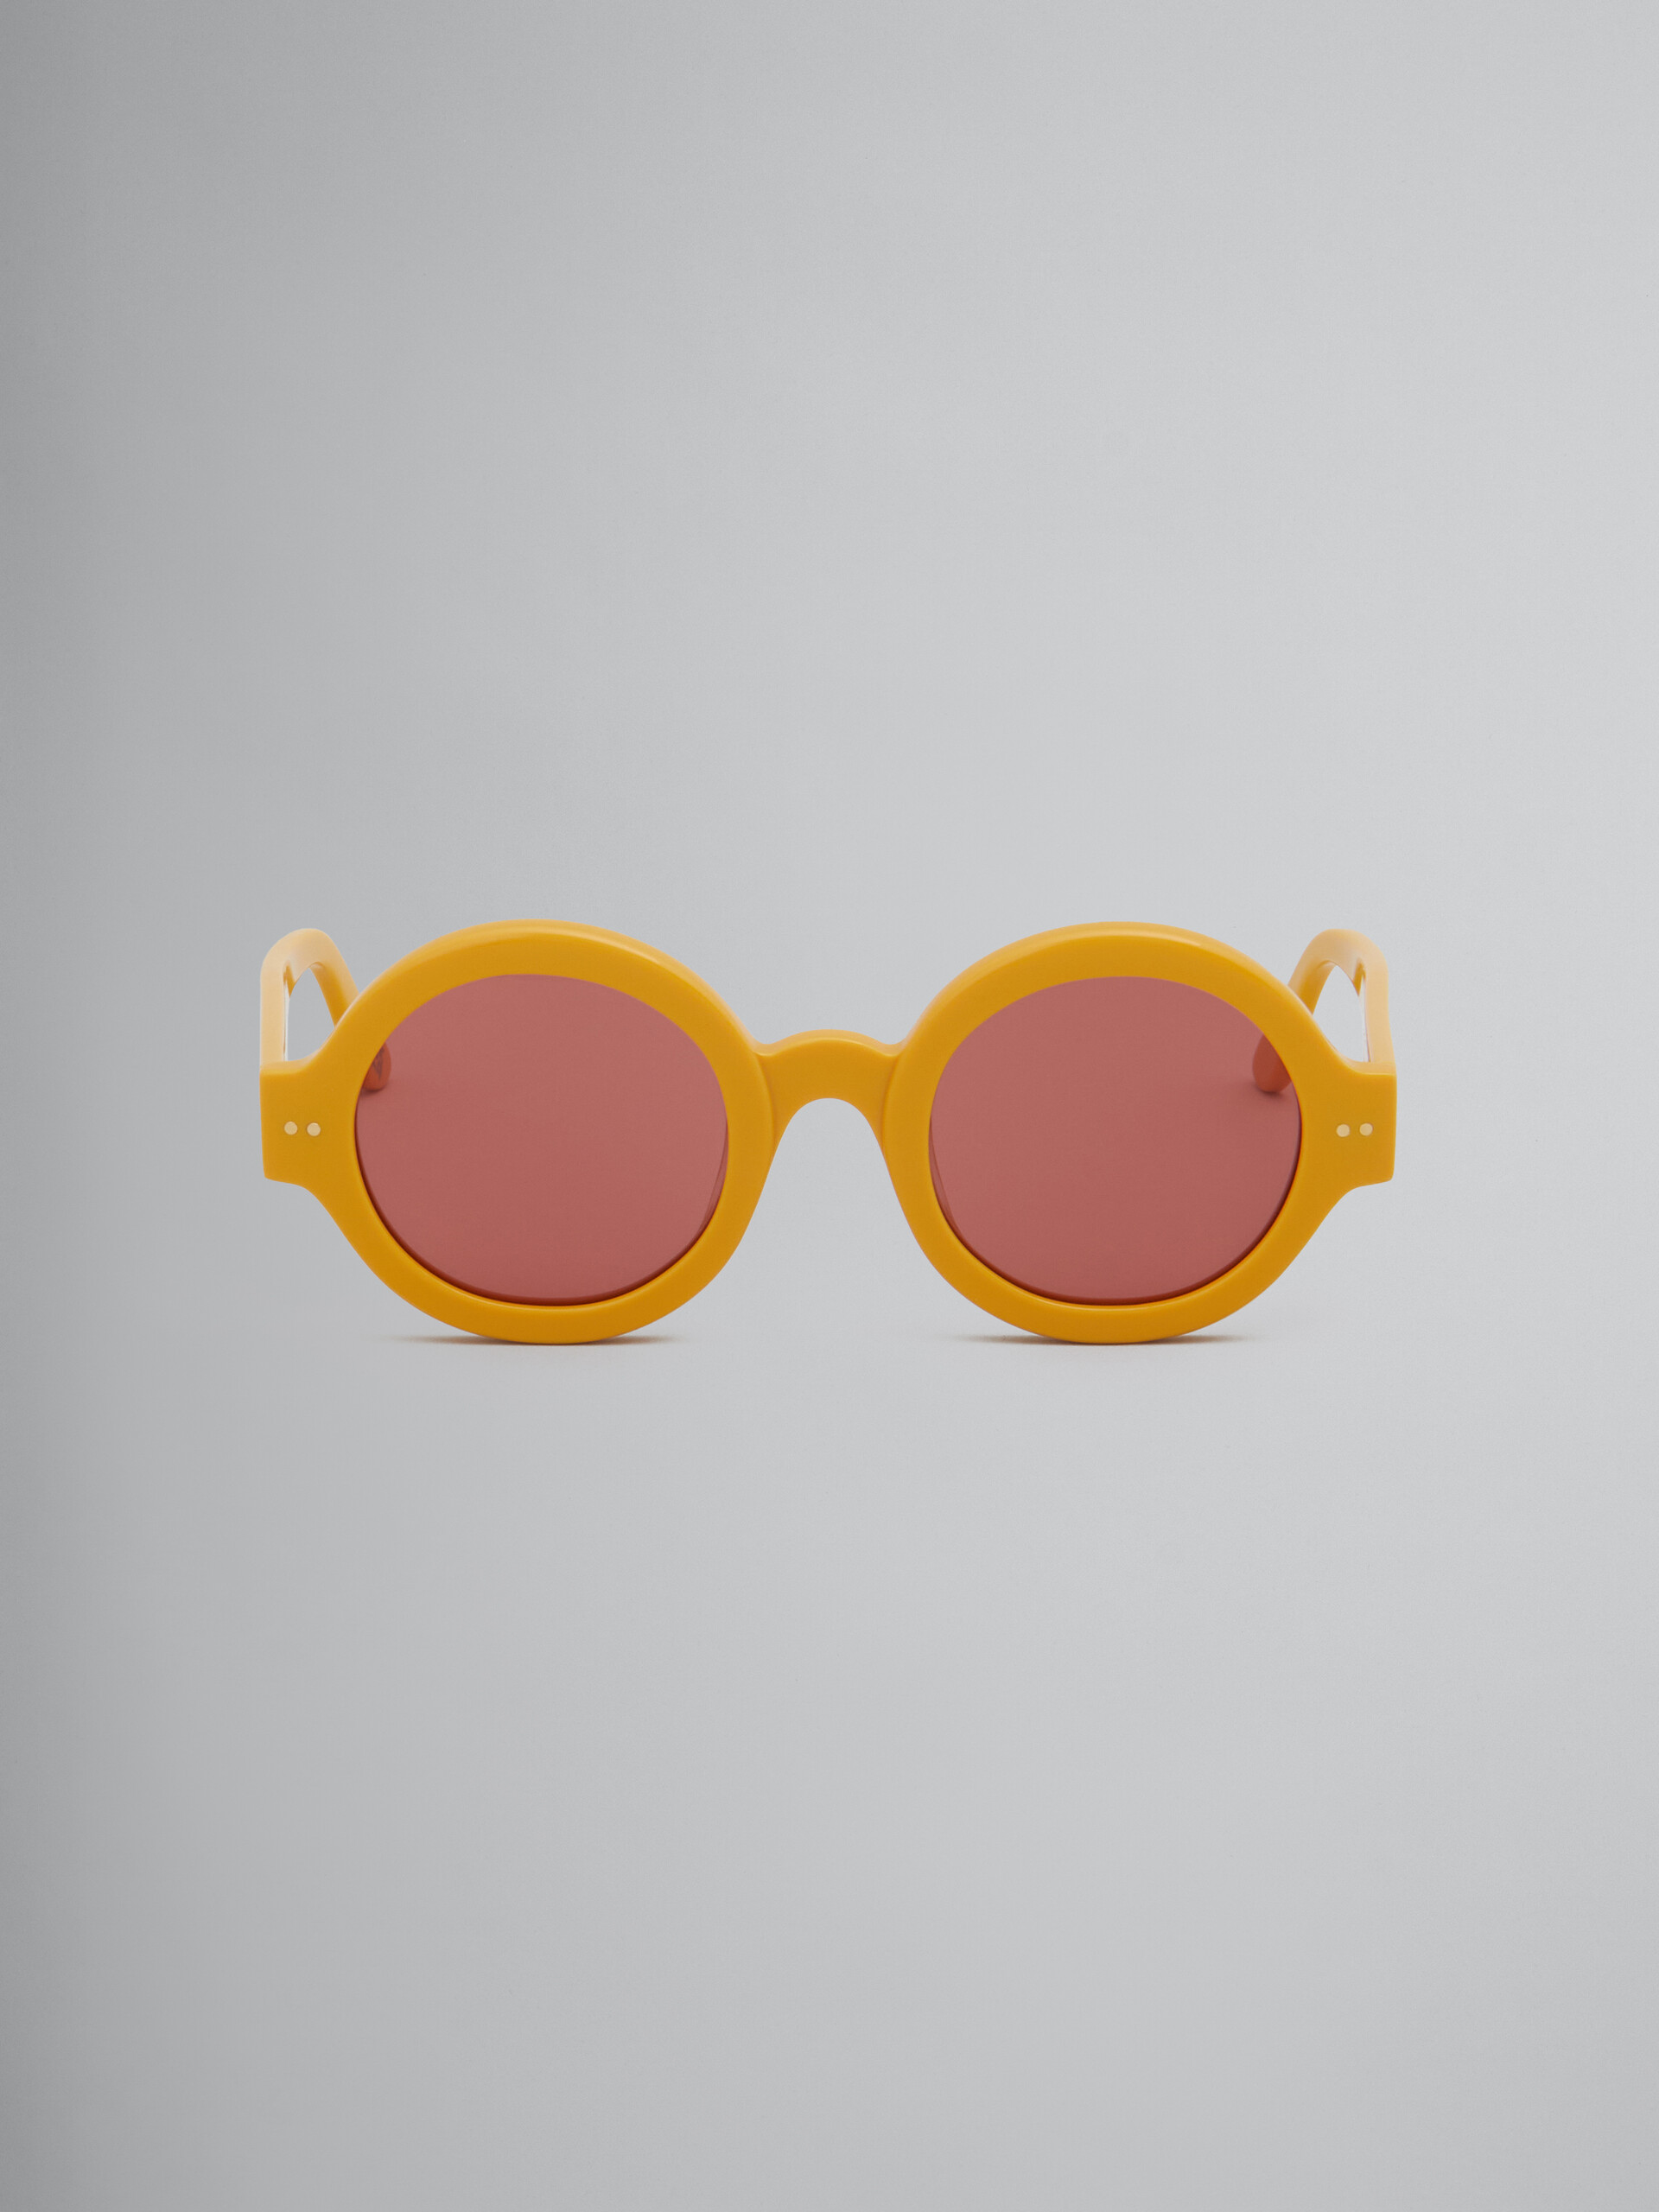 Nakagin Tower yellow sunglasses - Optical - Image 1